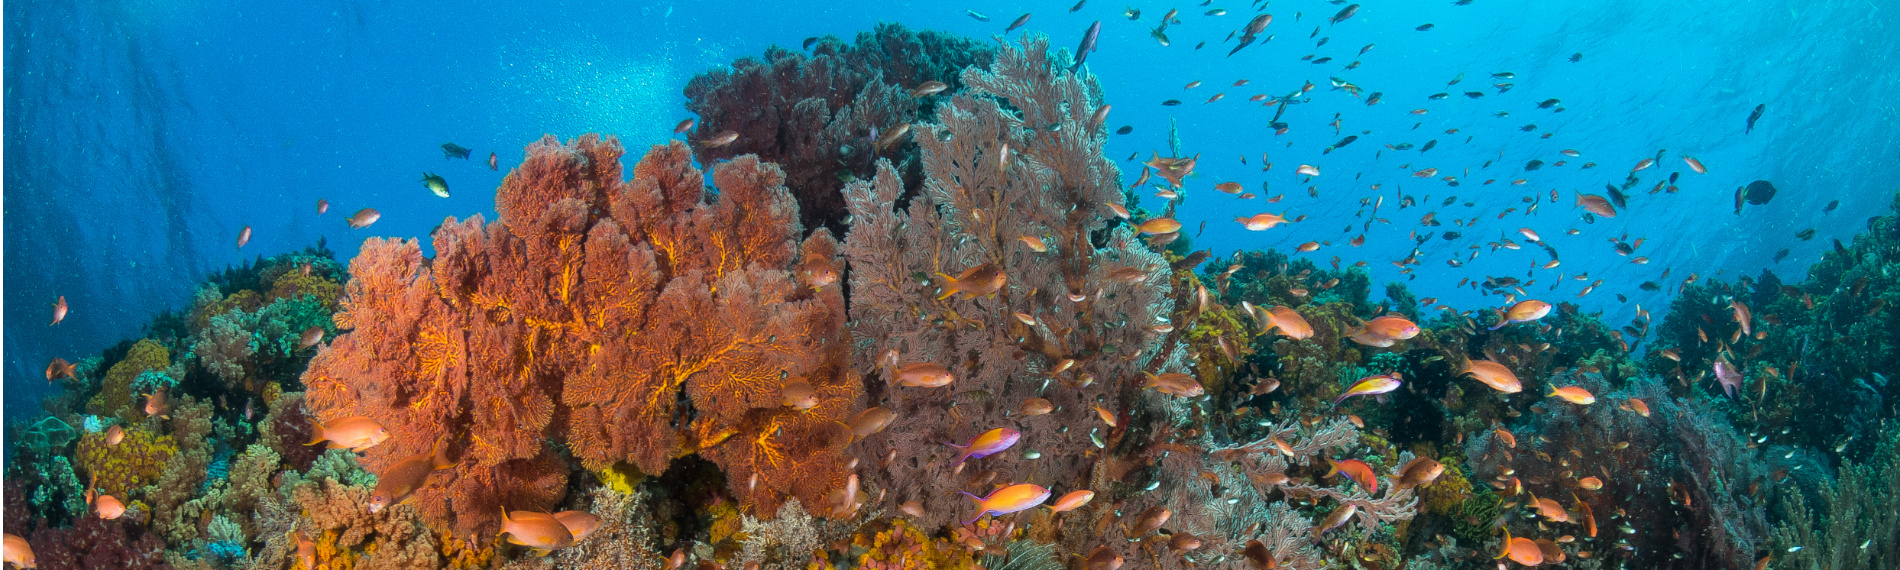 Indonesien - Nordsulawesi - Bangka - Coral Eye - Riff